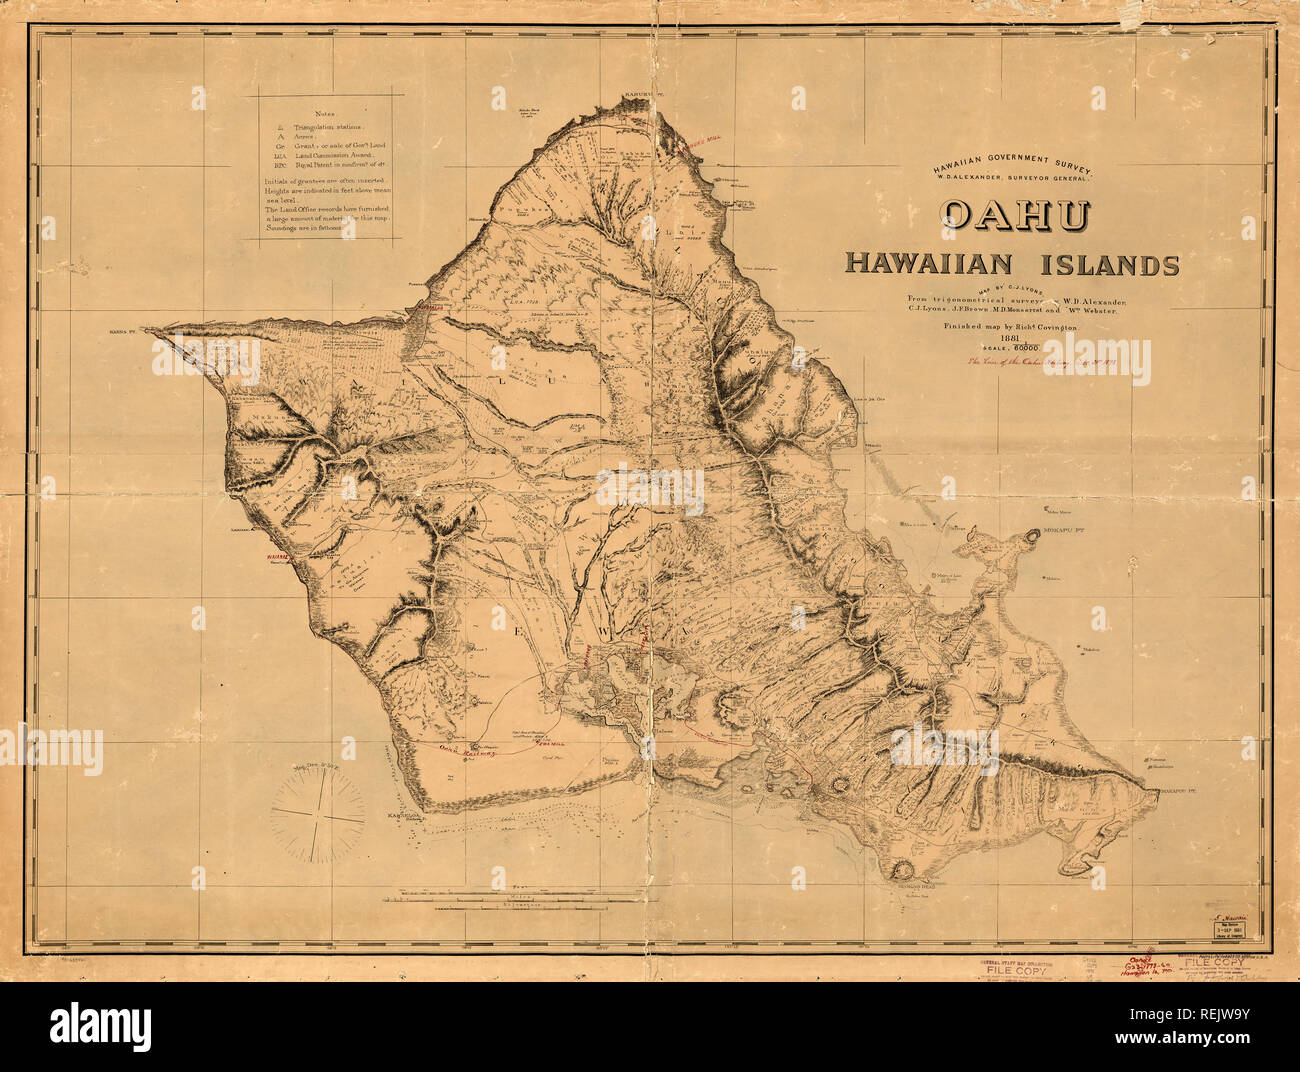 Oahu, Hawaii Inseln, Übersichtskarte, von C.J. Lyons, aus Trigonometrischen Umfragen von W.D. Alexander, C.J. Lyons, J.F. Braun, M.D. Monsarrat und Wm. Webster, fertige Karte von Richard Covington, 1881 Stockfoto